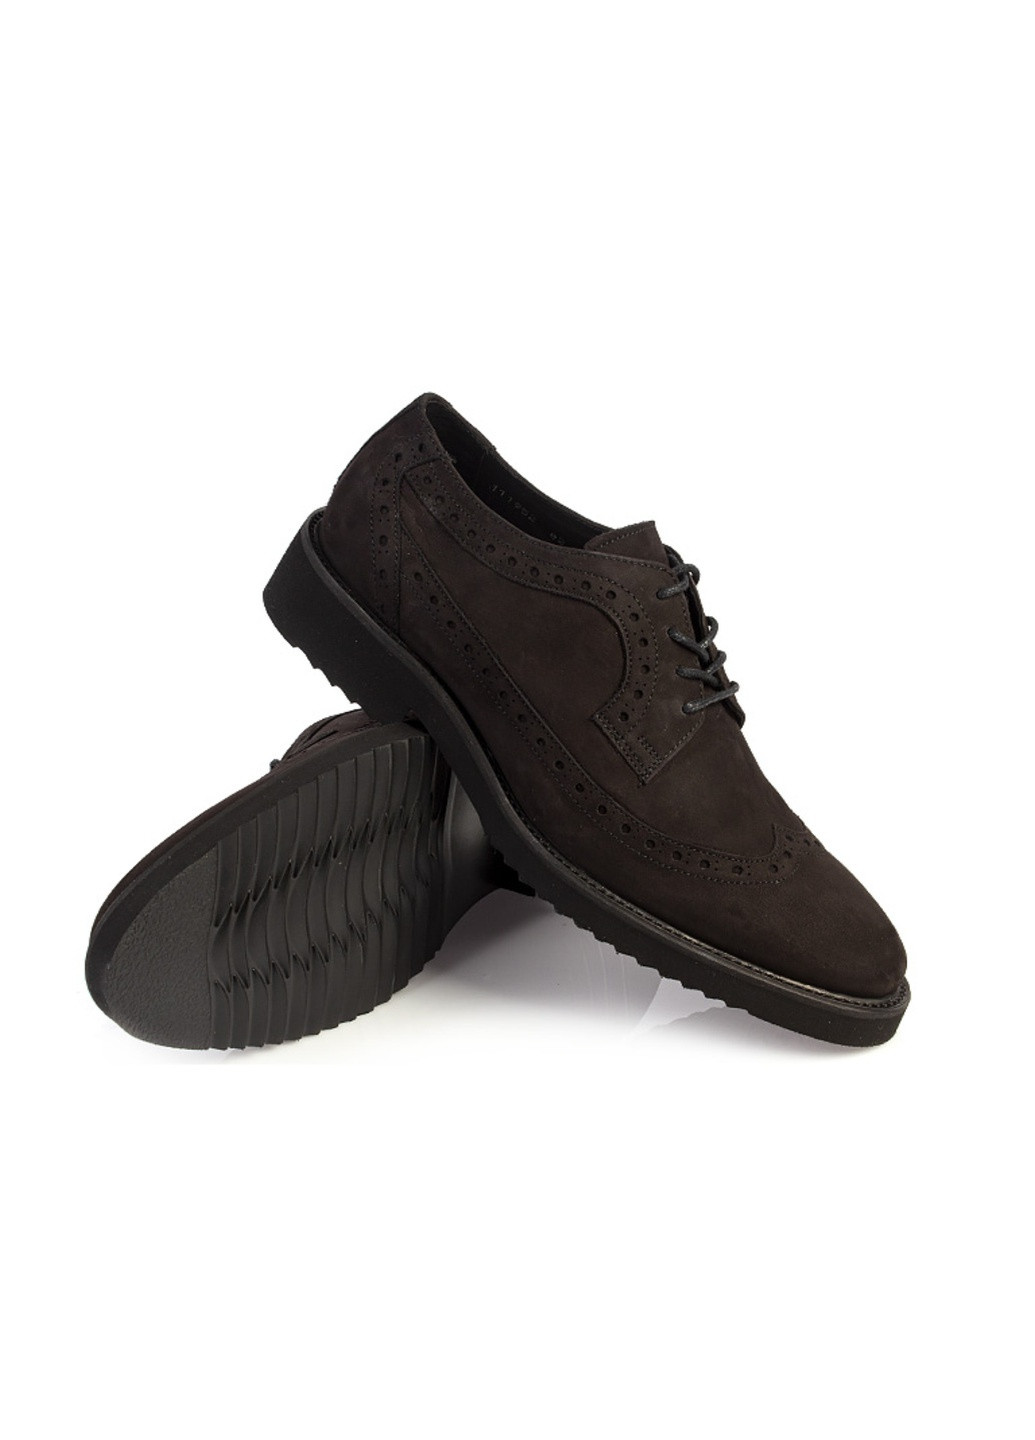 Коричневые классические туфли мужские бренда 9402040_(1) Vittorio Pritti на шнурках